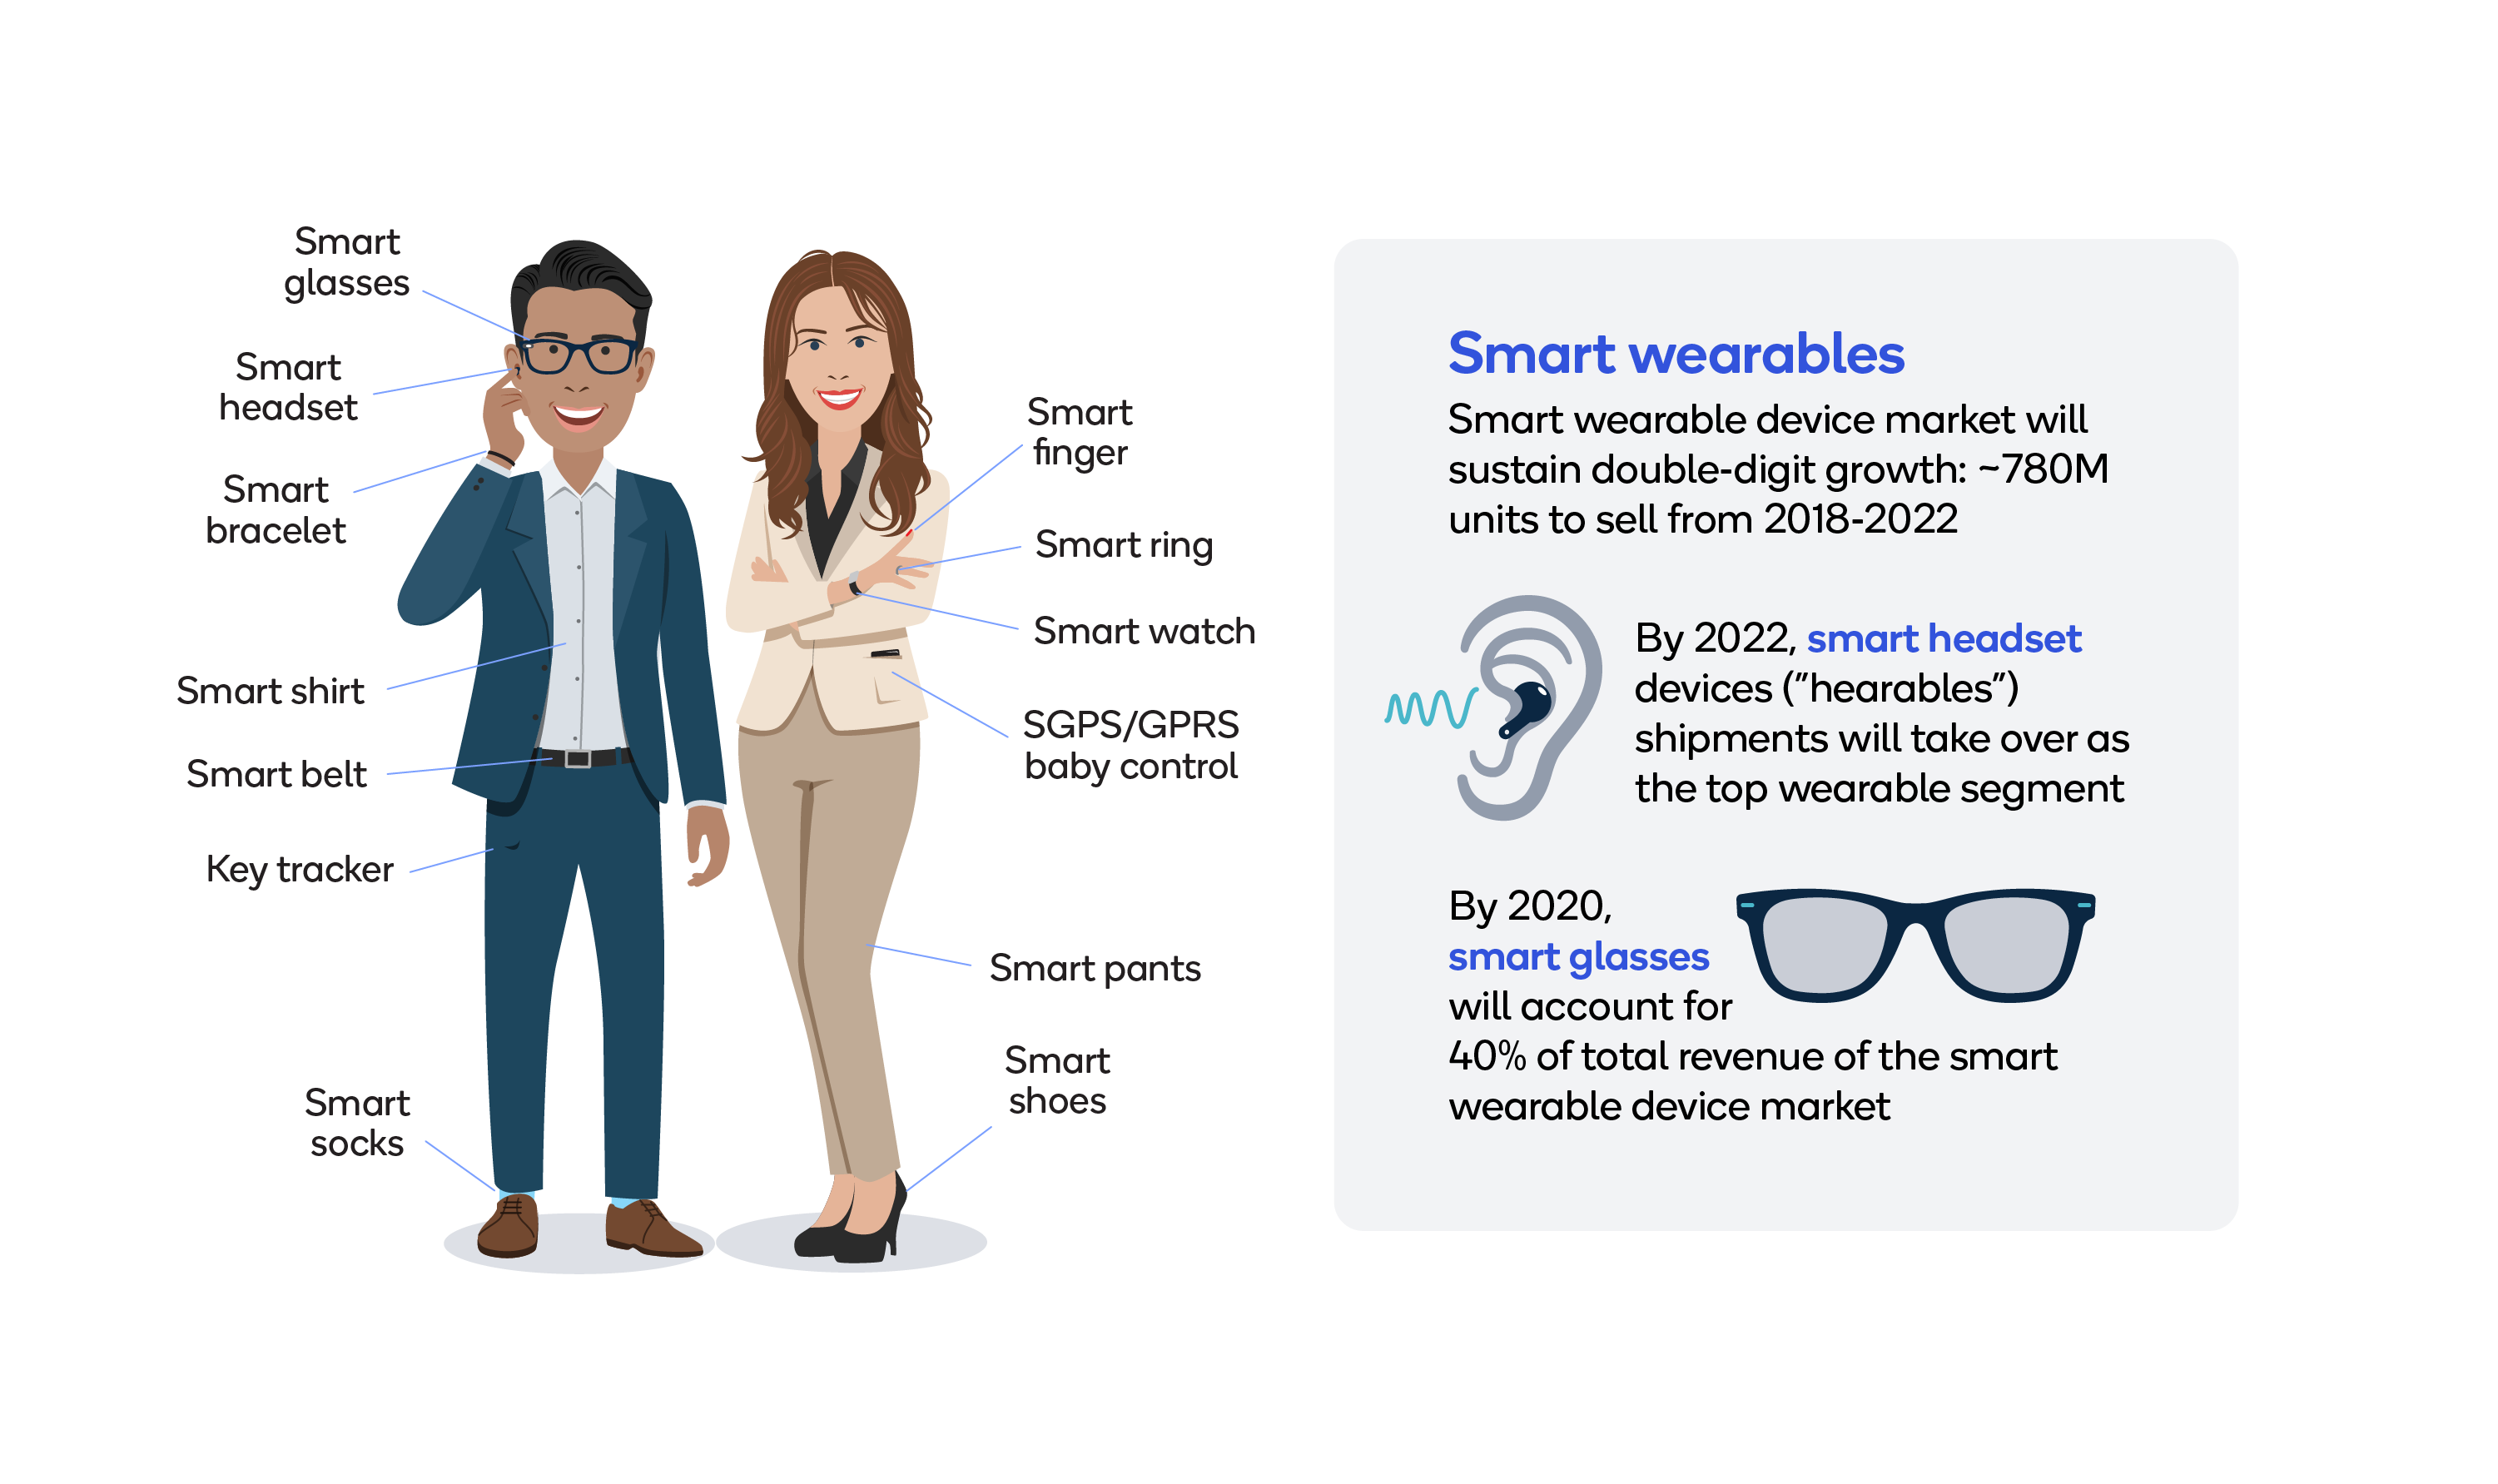 Smart wearables